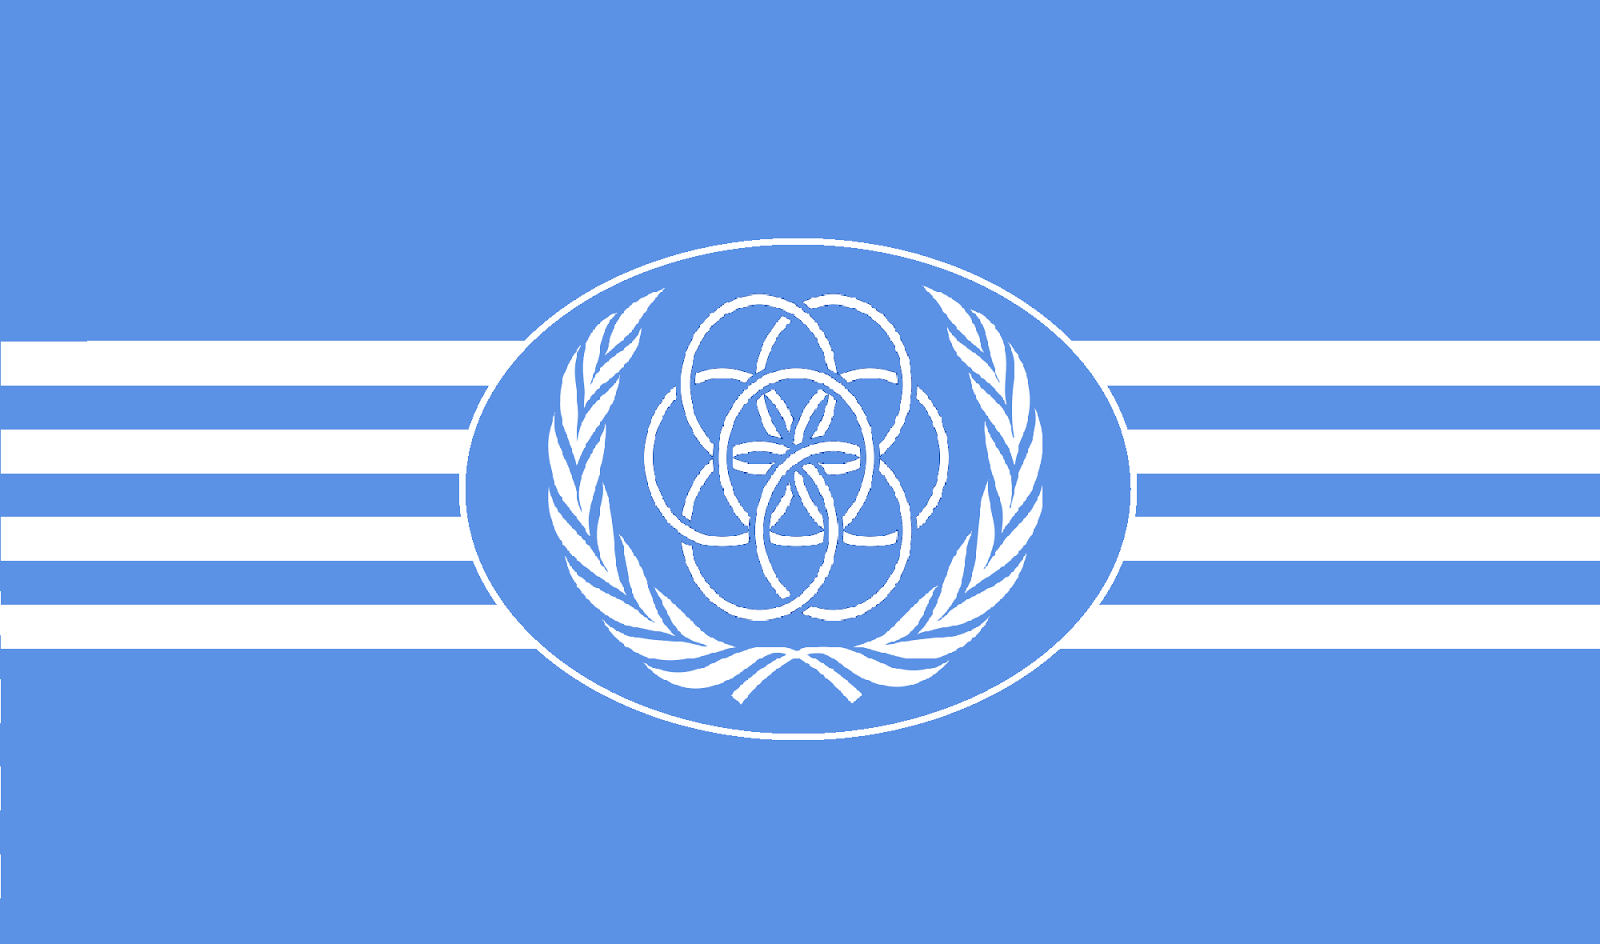 UN+flag+4a.png